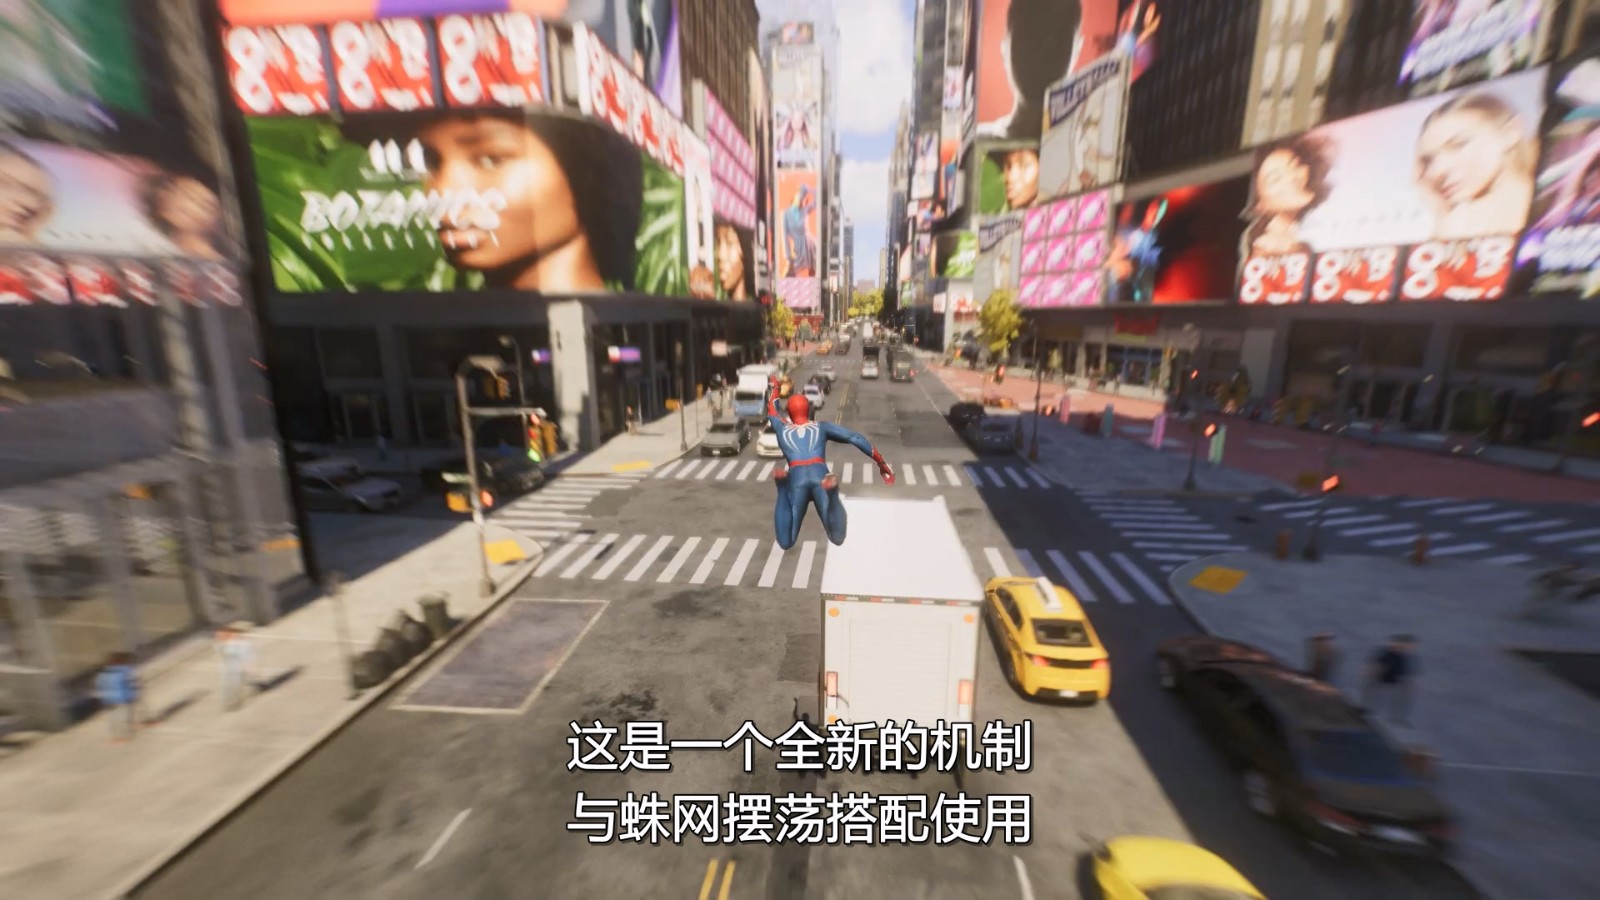 《漫威蜘蛛俠2》新預告片 經過拓展的漫威宇宙紐約市